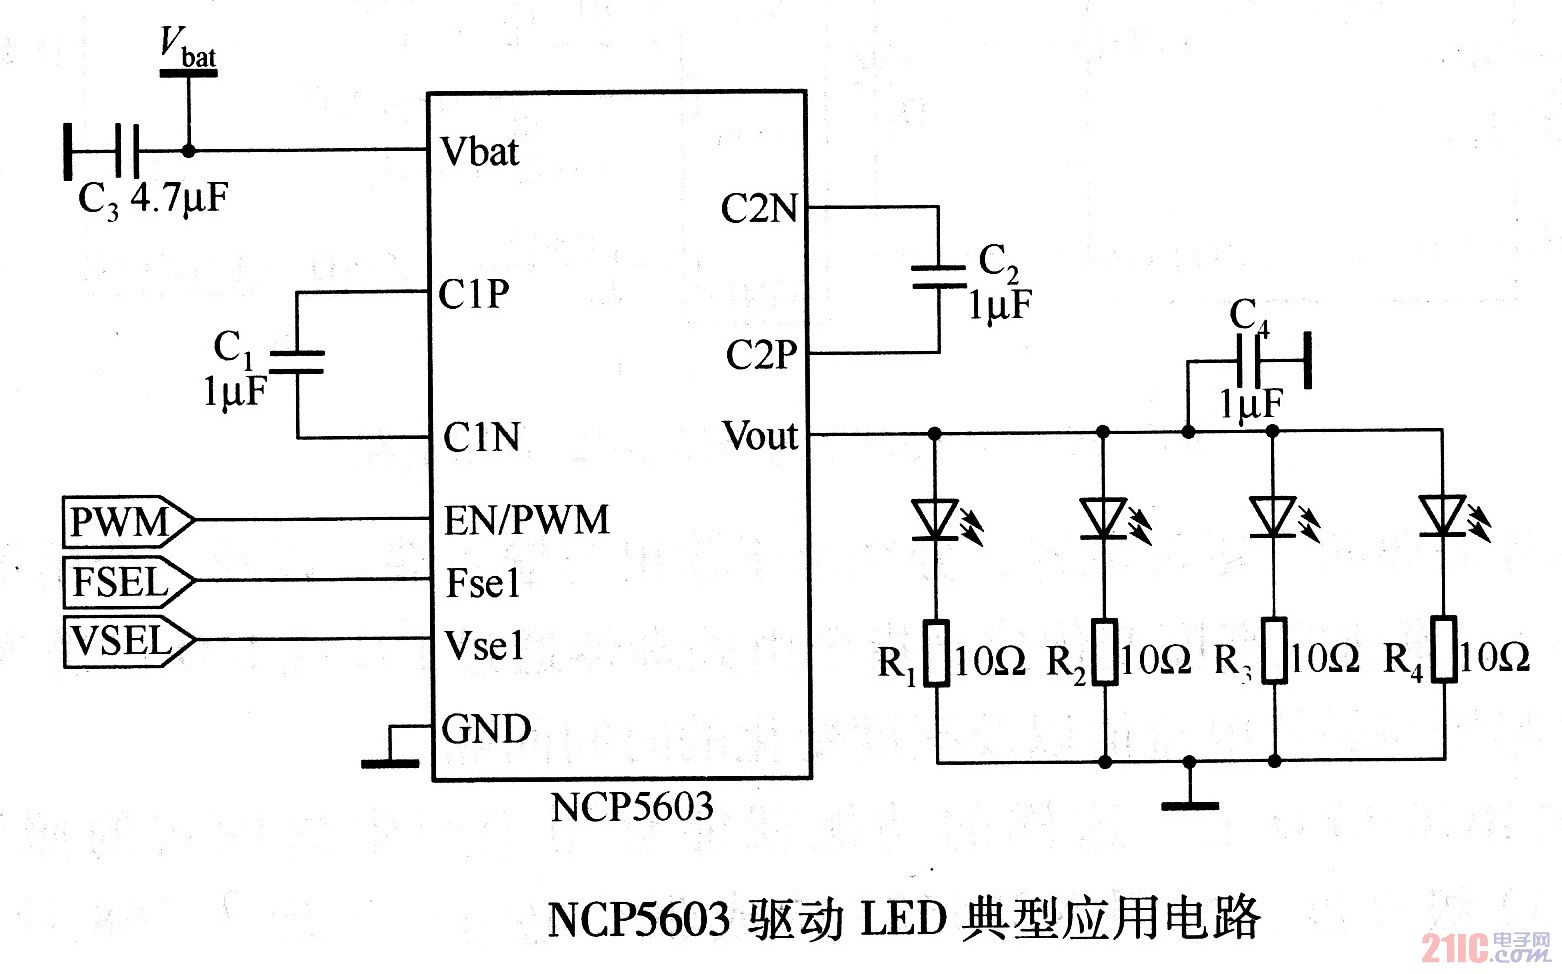 NCP5603驱动LED典型应用电路.jpg